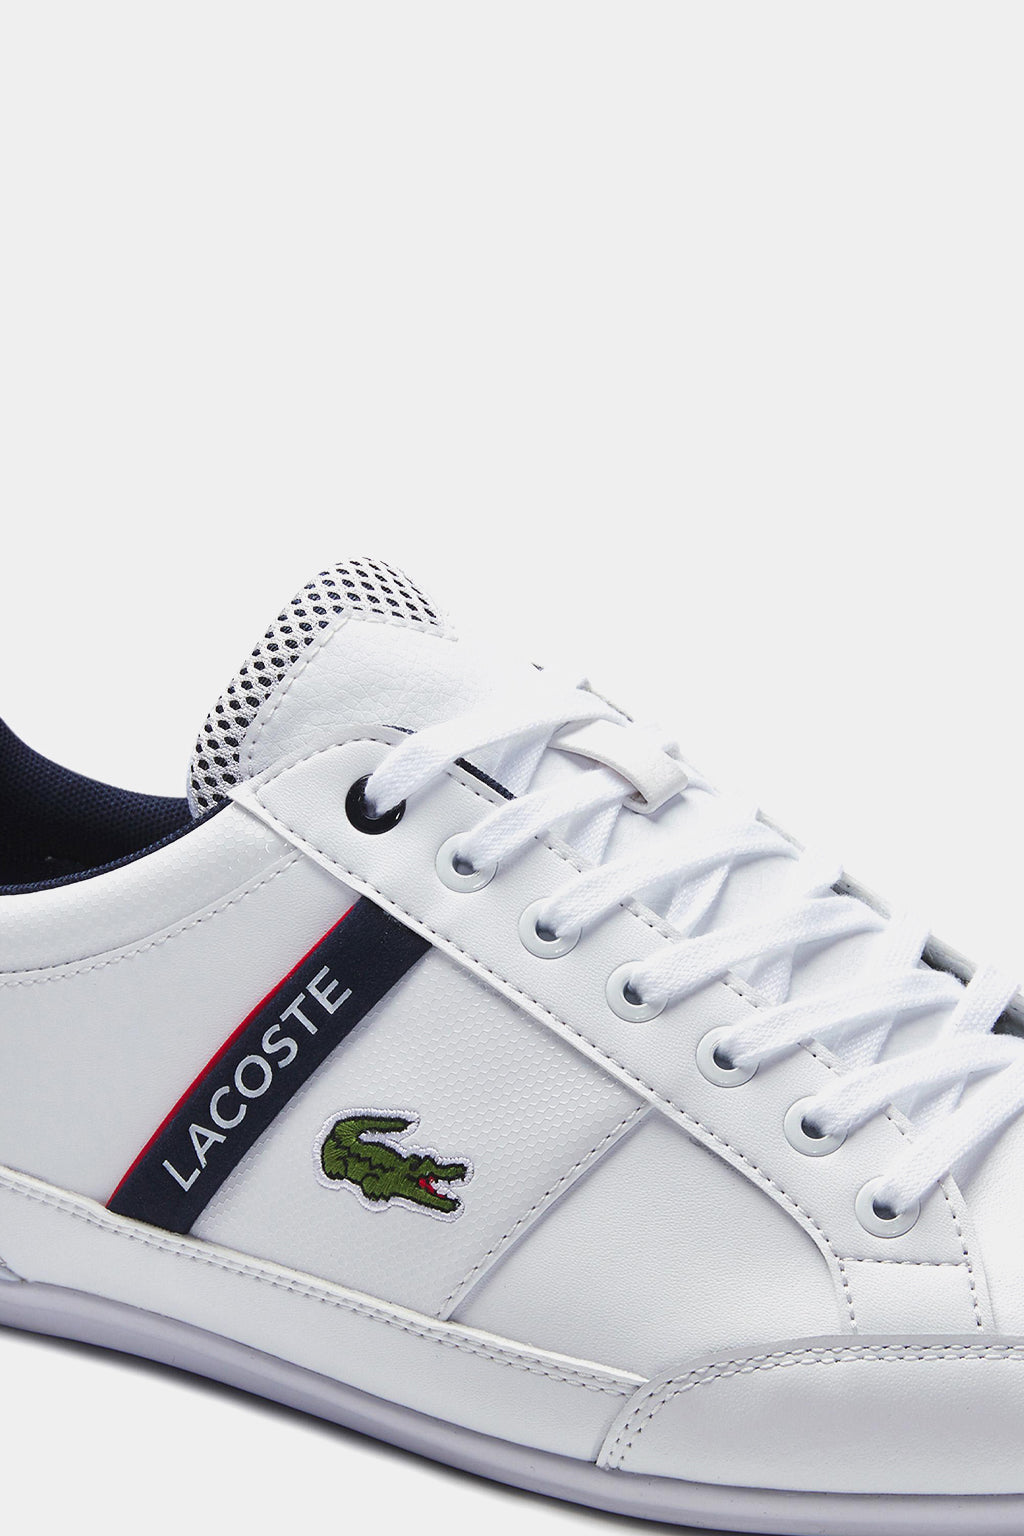 Lacoste - Men's Chaymon Sneakers